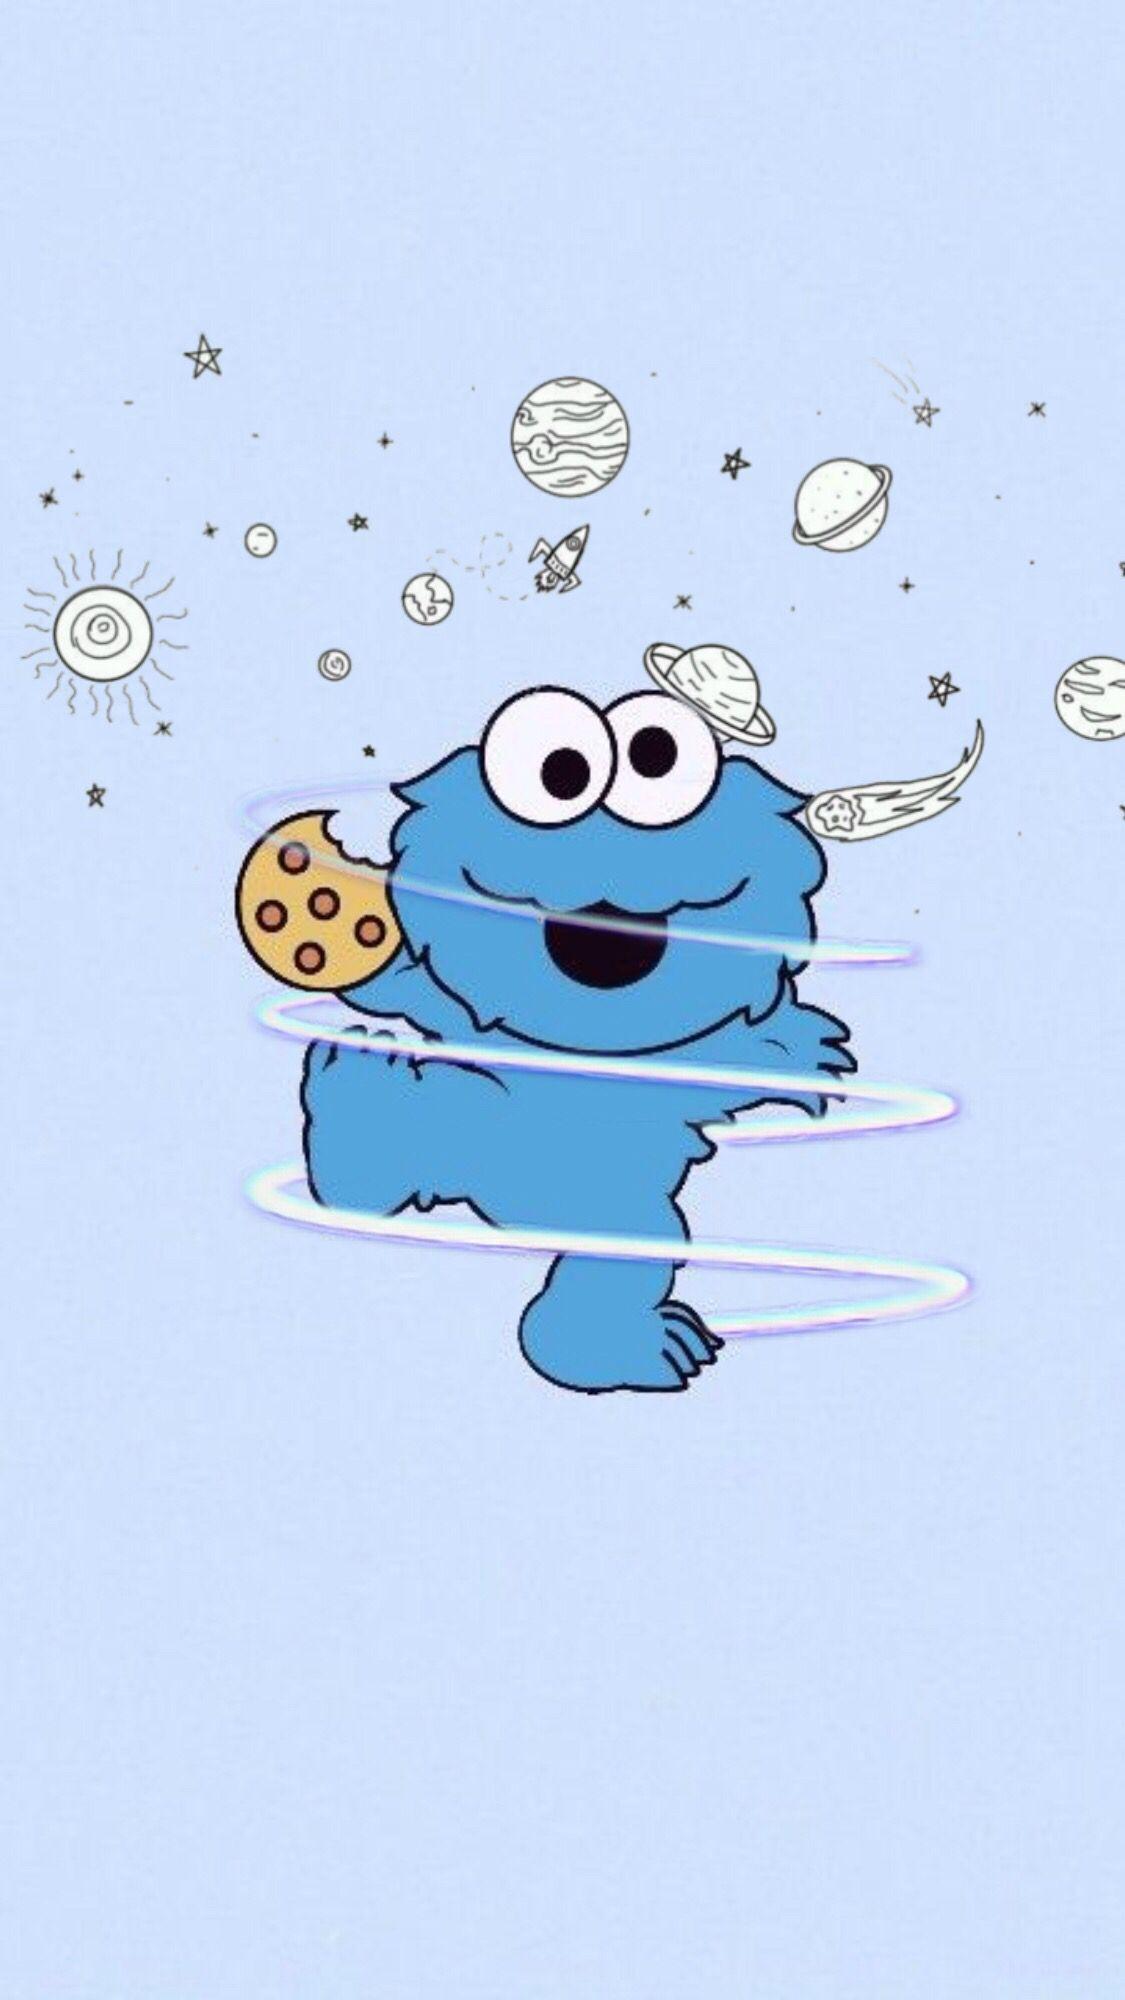 Cute Cookie Monster Wallpapers  Top Free Cute Cookie Monster Backgrounds   WallpaperAccess